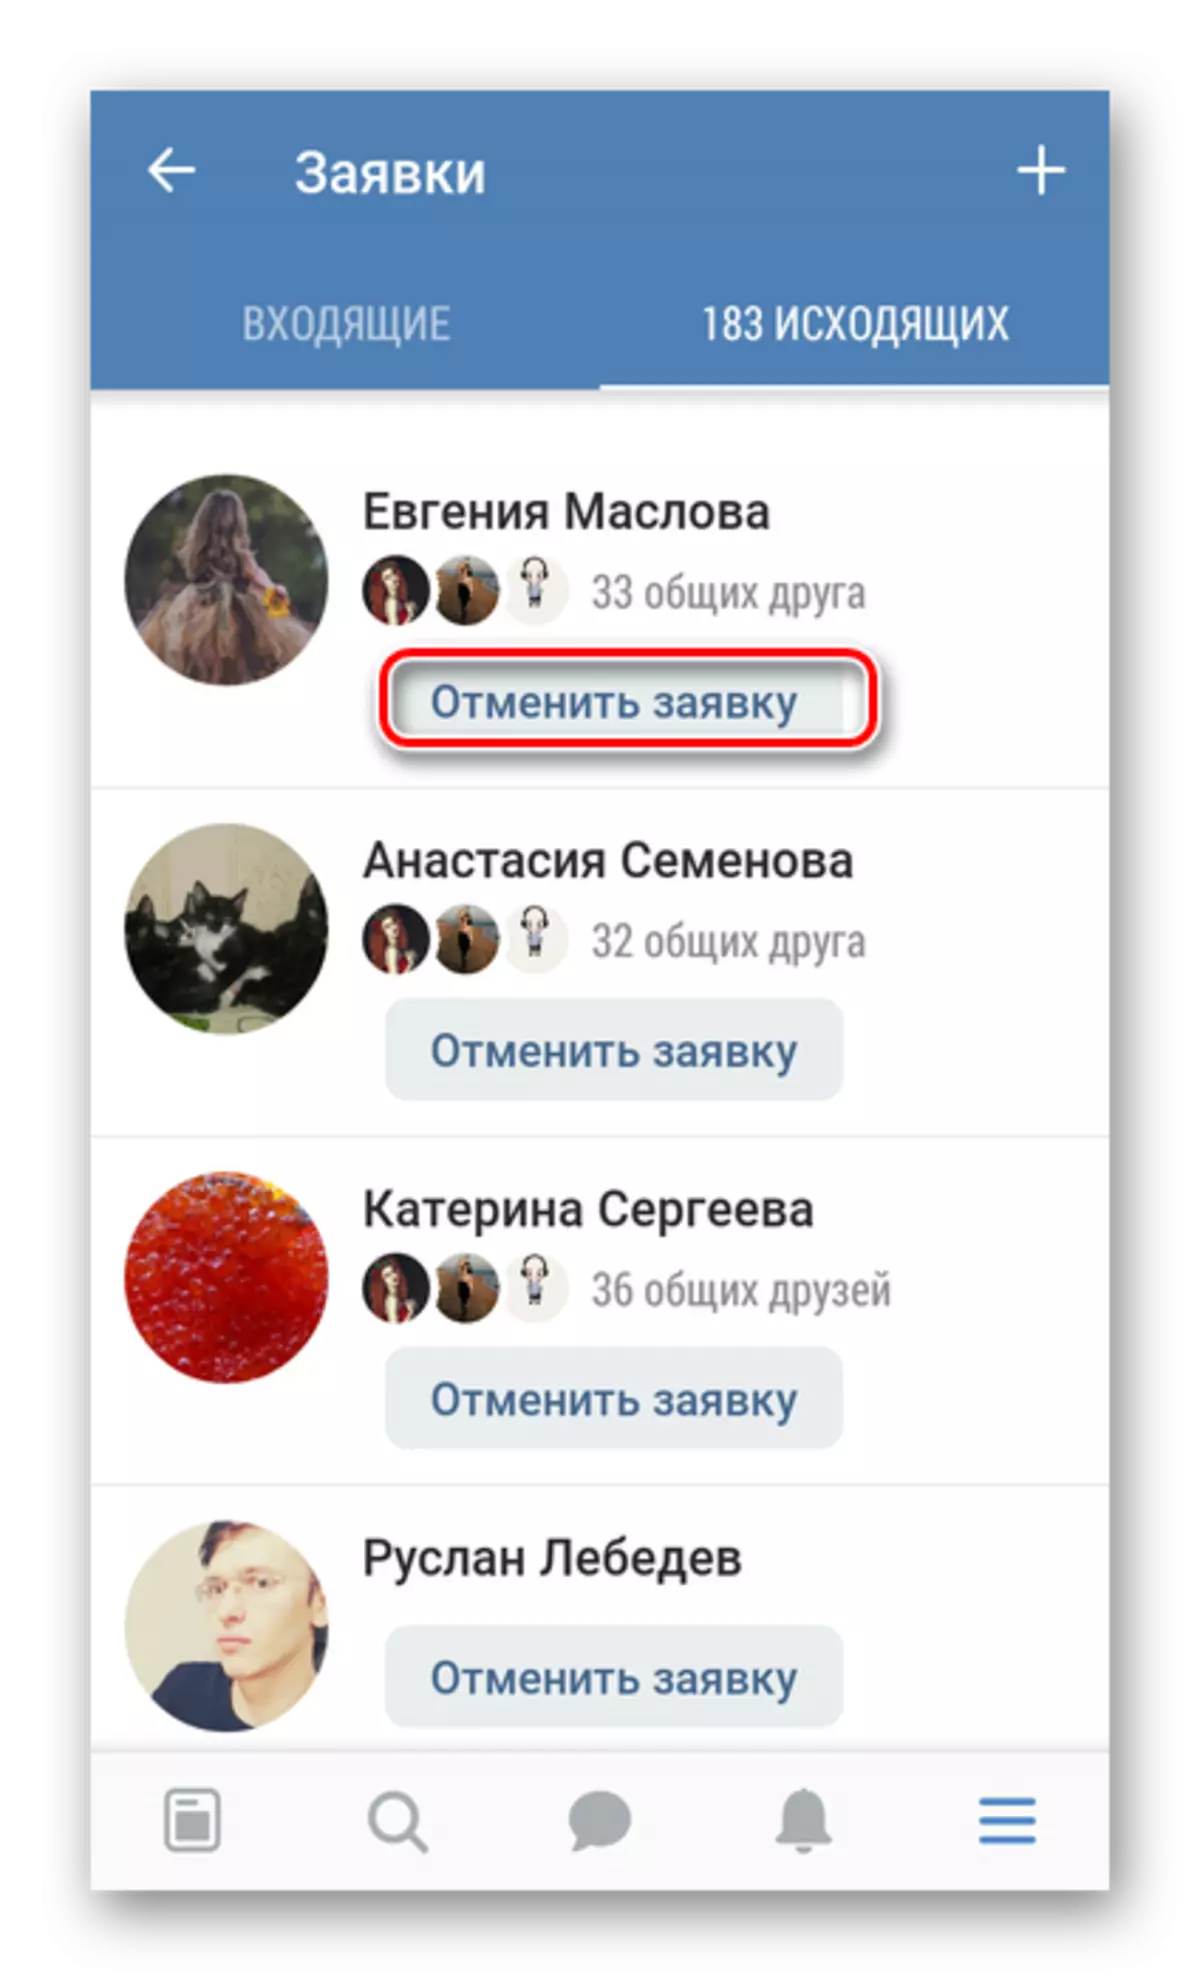 Cancelar a súa aplicación de amizade na aplicación Vkontakte